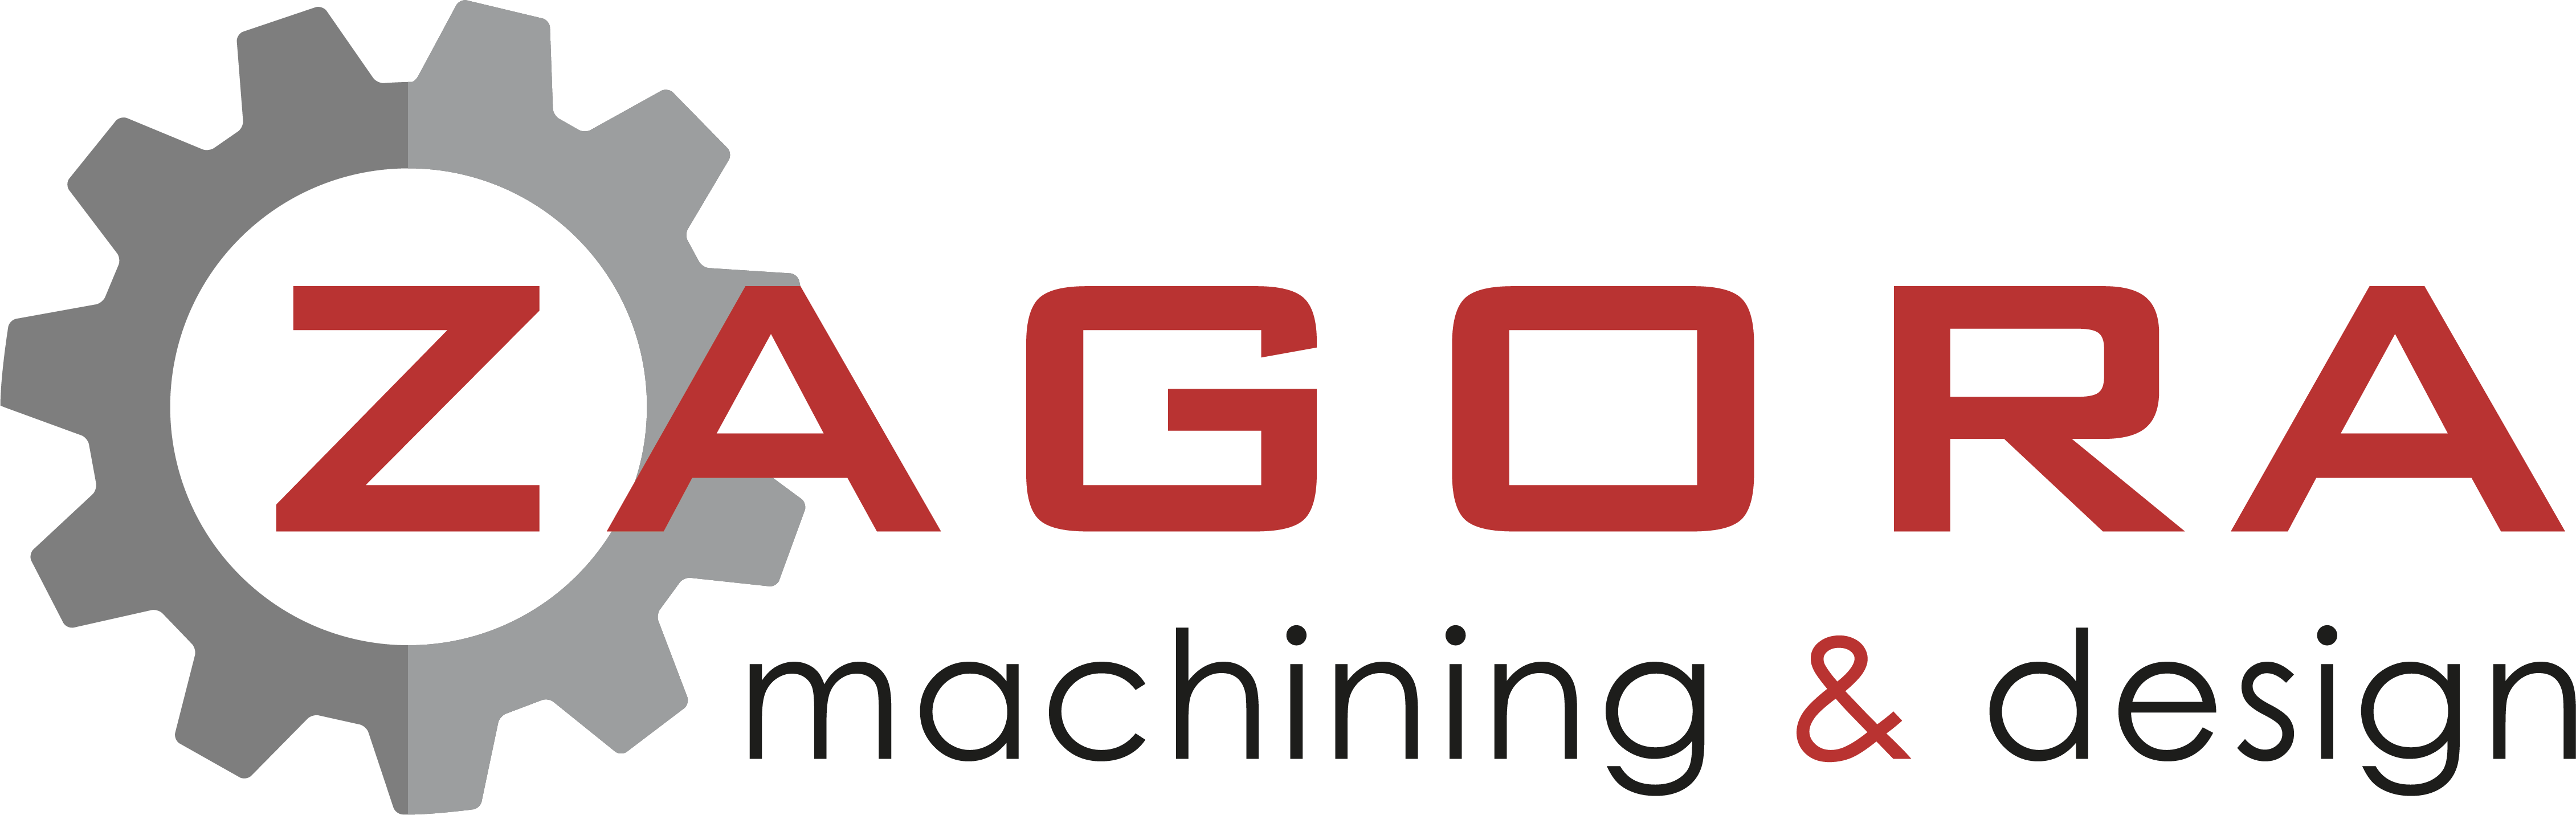 Zagora Design logo - cordego